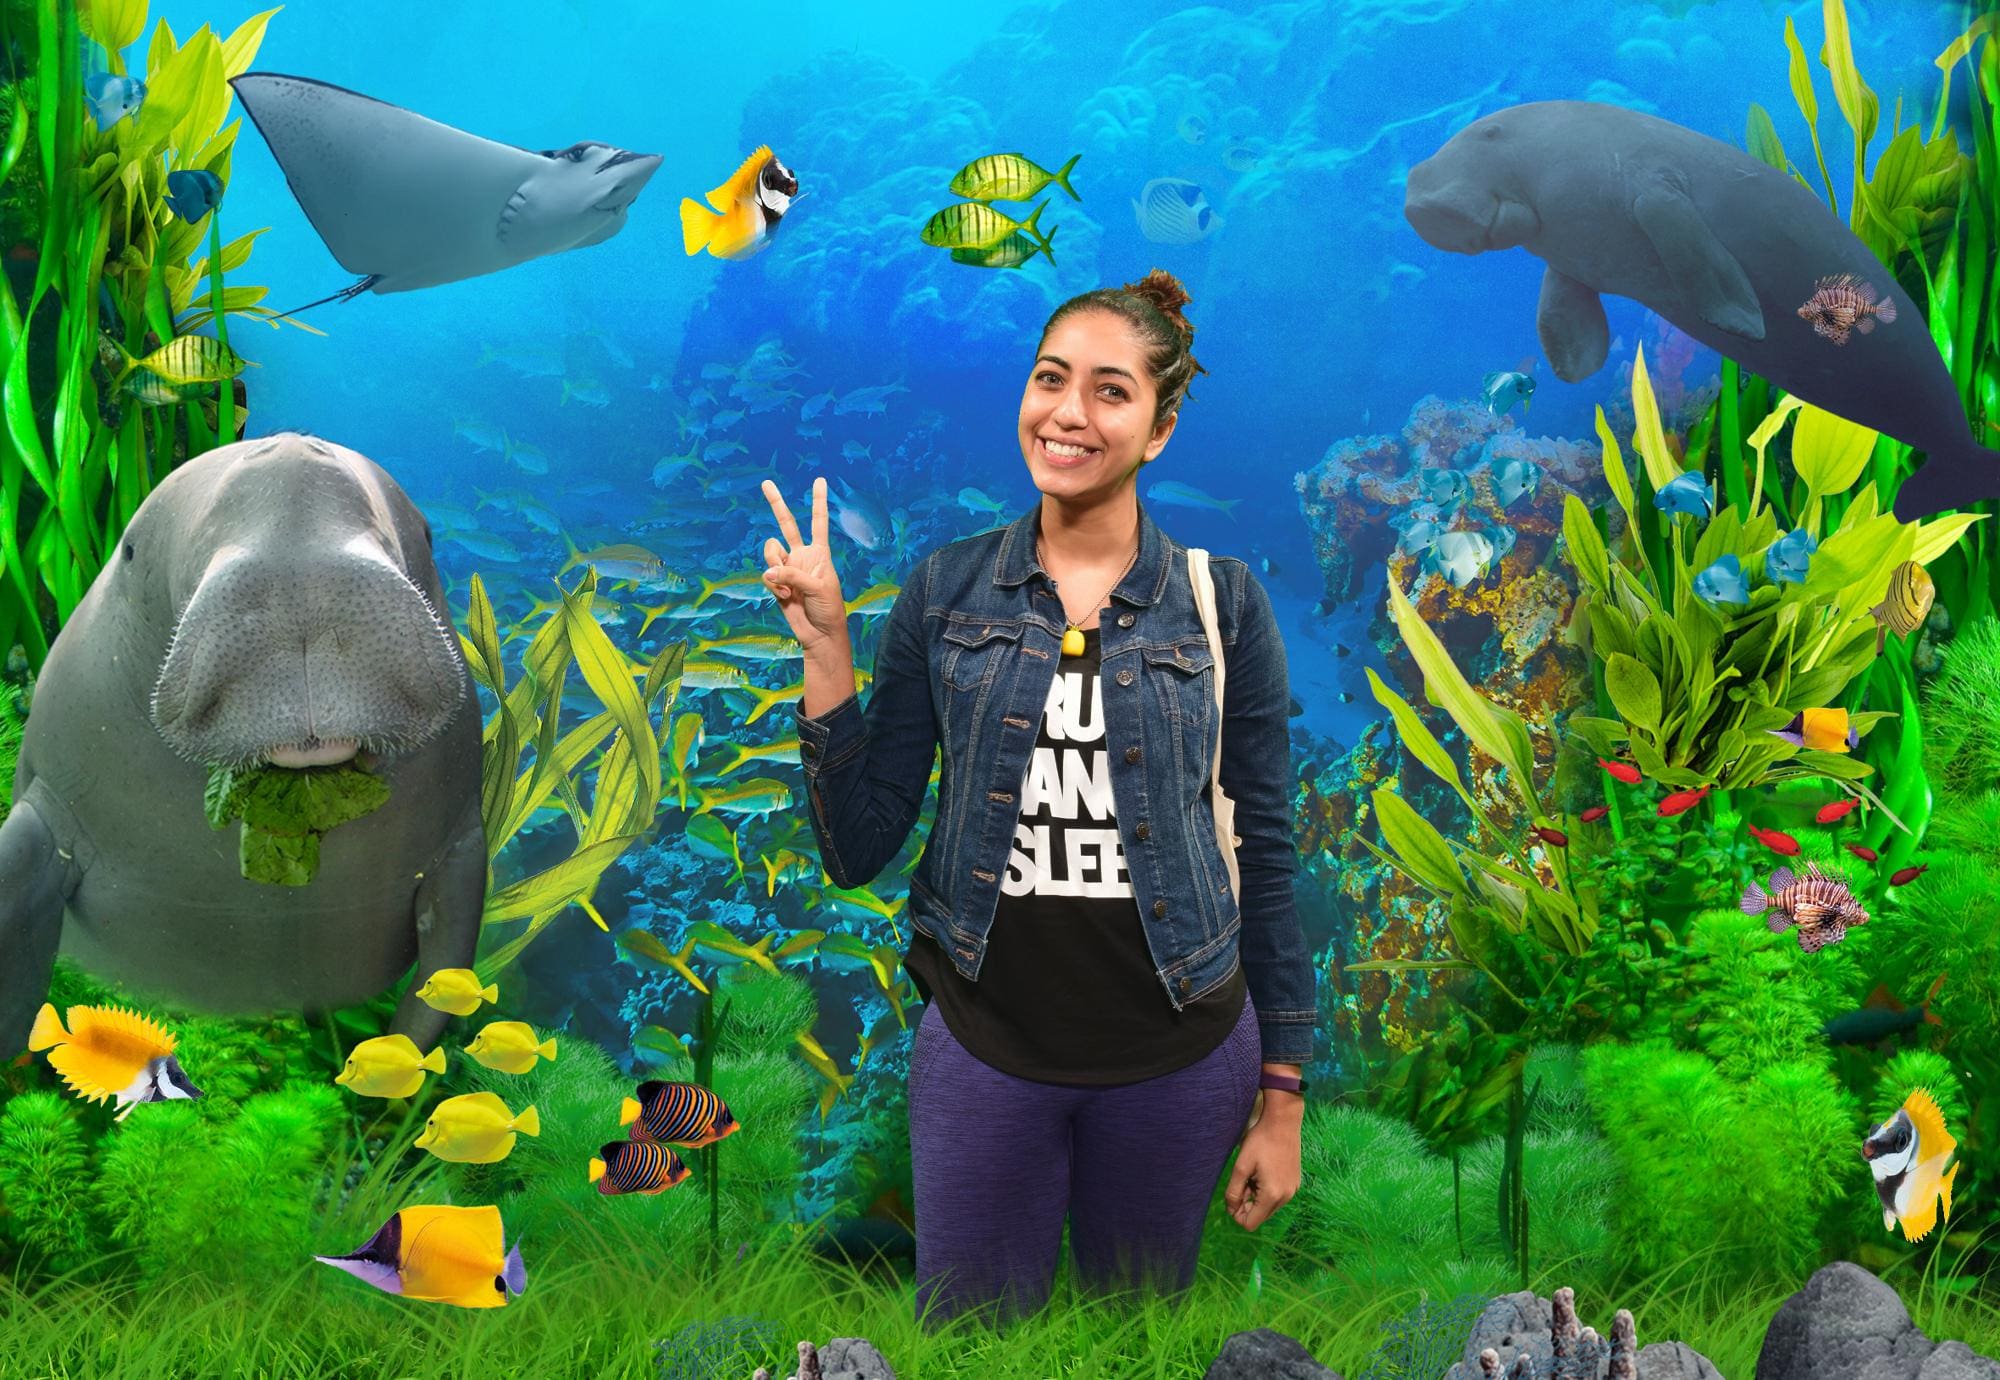 Meeting Dugong At Sydney Aquarium